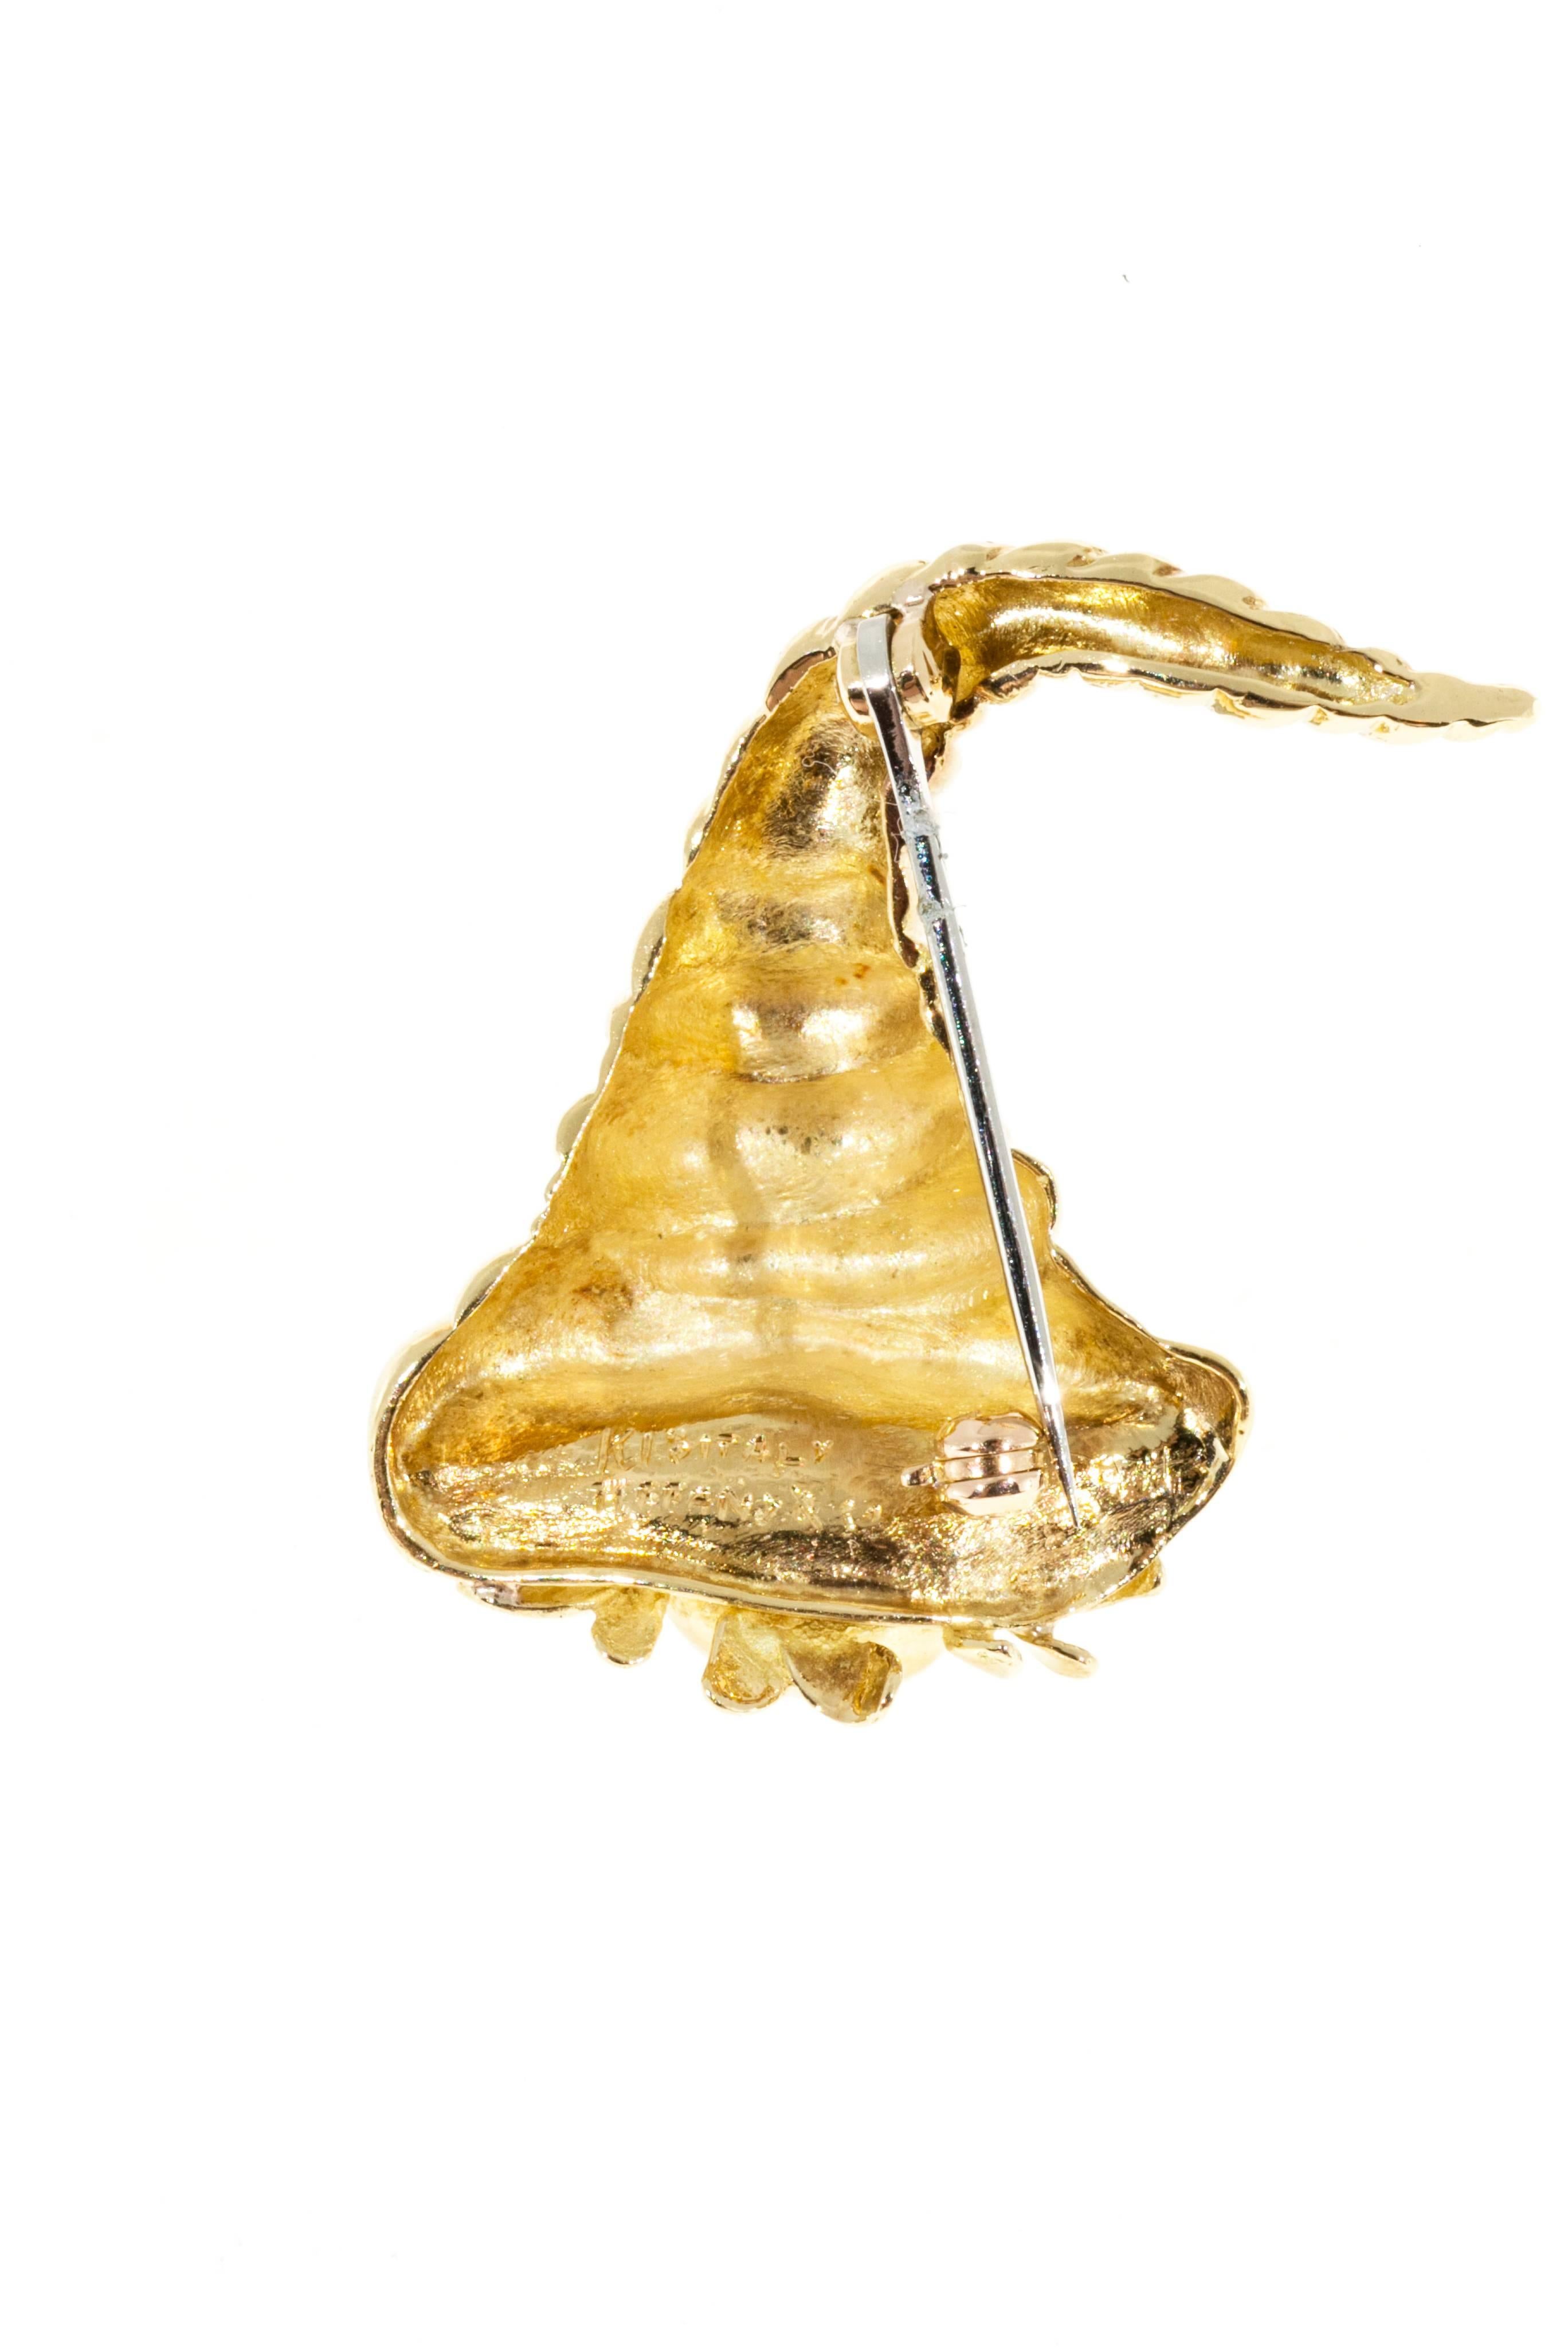 Tiffany & Co. Gold Cornucopia Pin For Sale 2